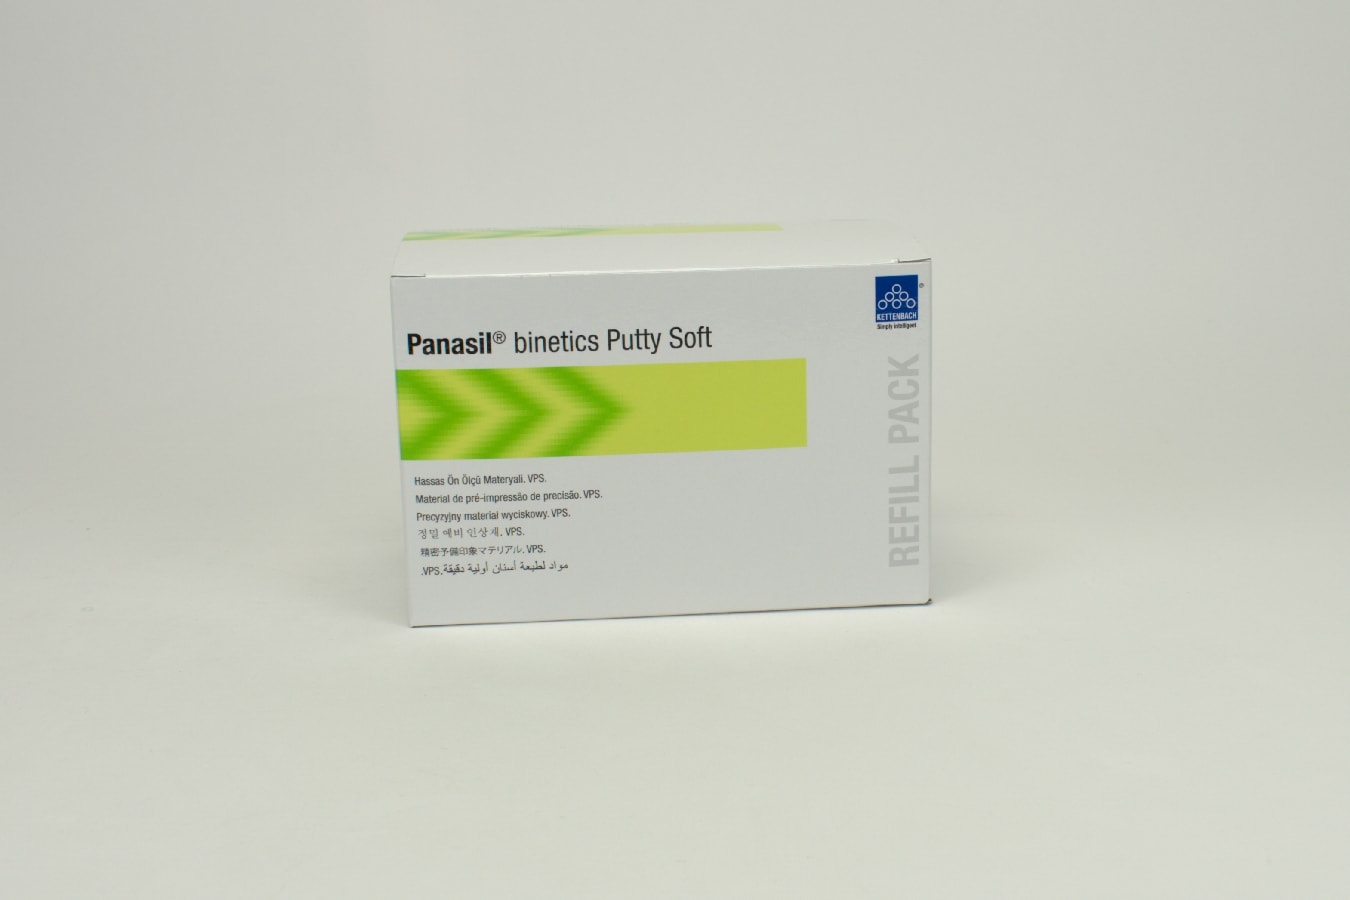 Panasil binetics Putty Soft 2x380ml Refill